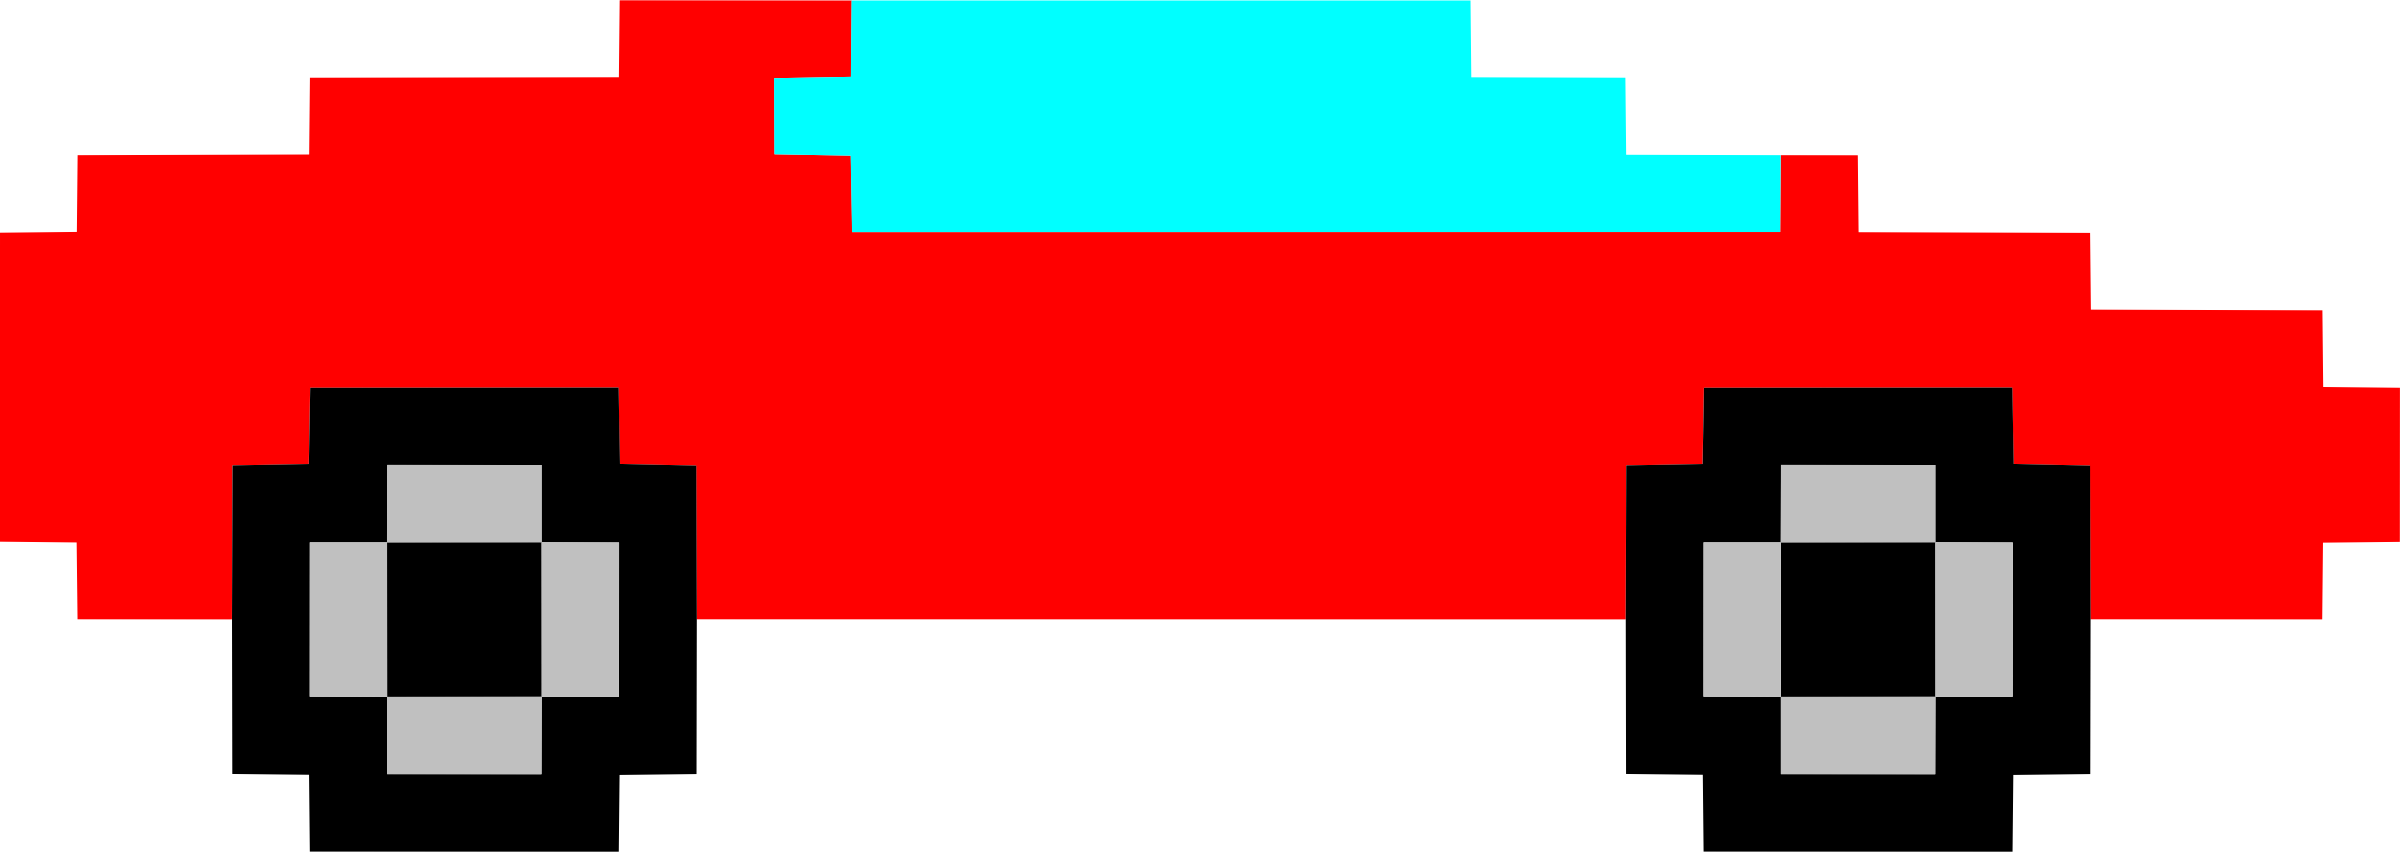 Pixel Art Car 5 - Pixel Art Car (2400x852)